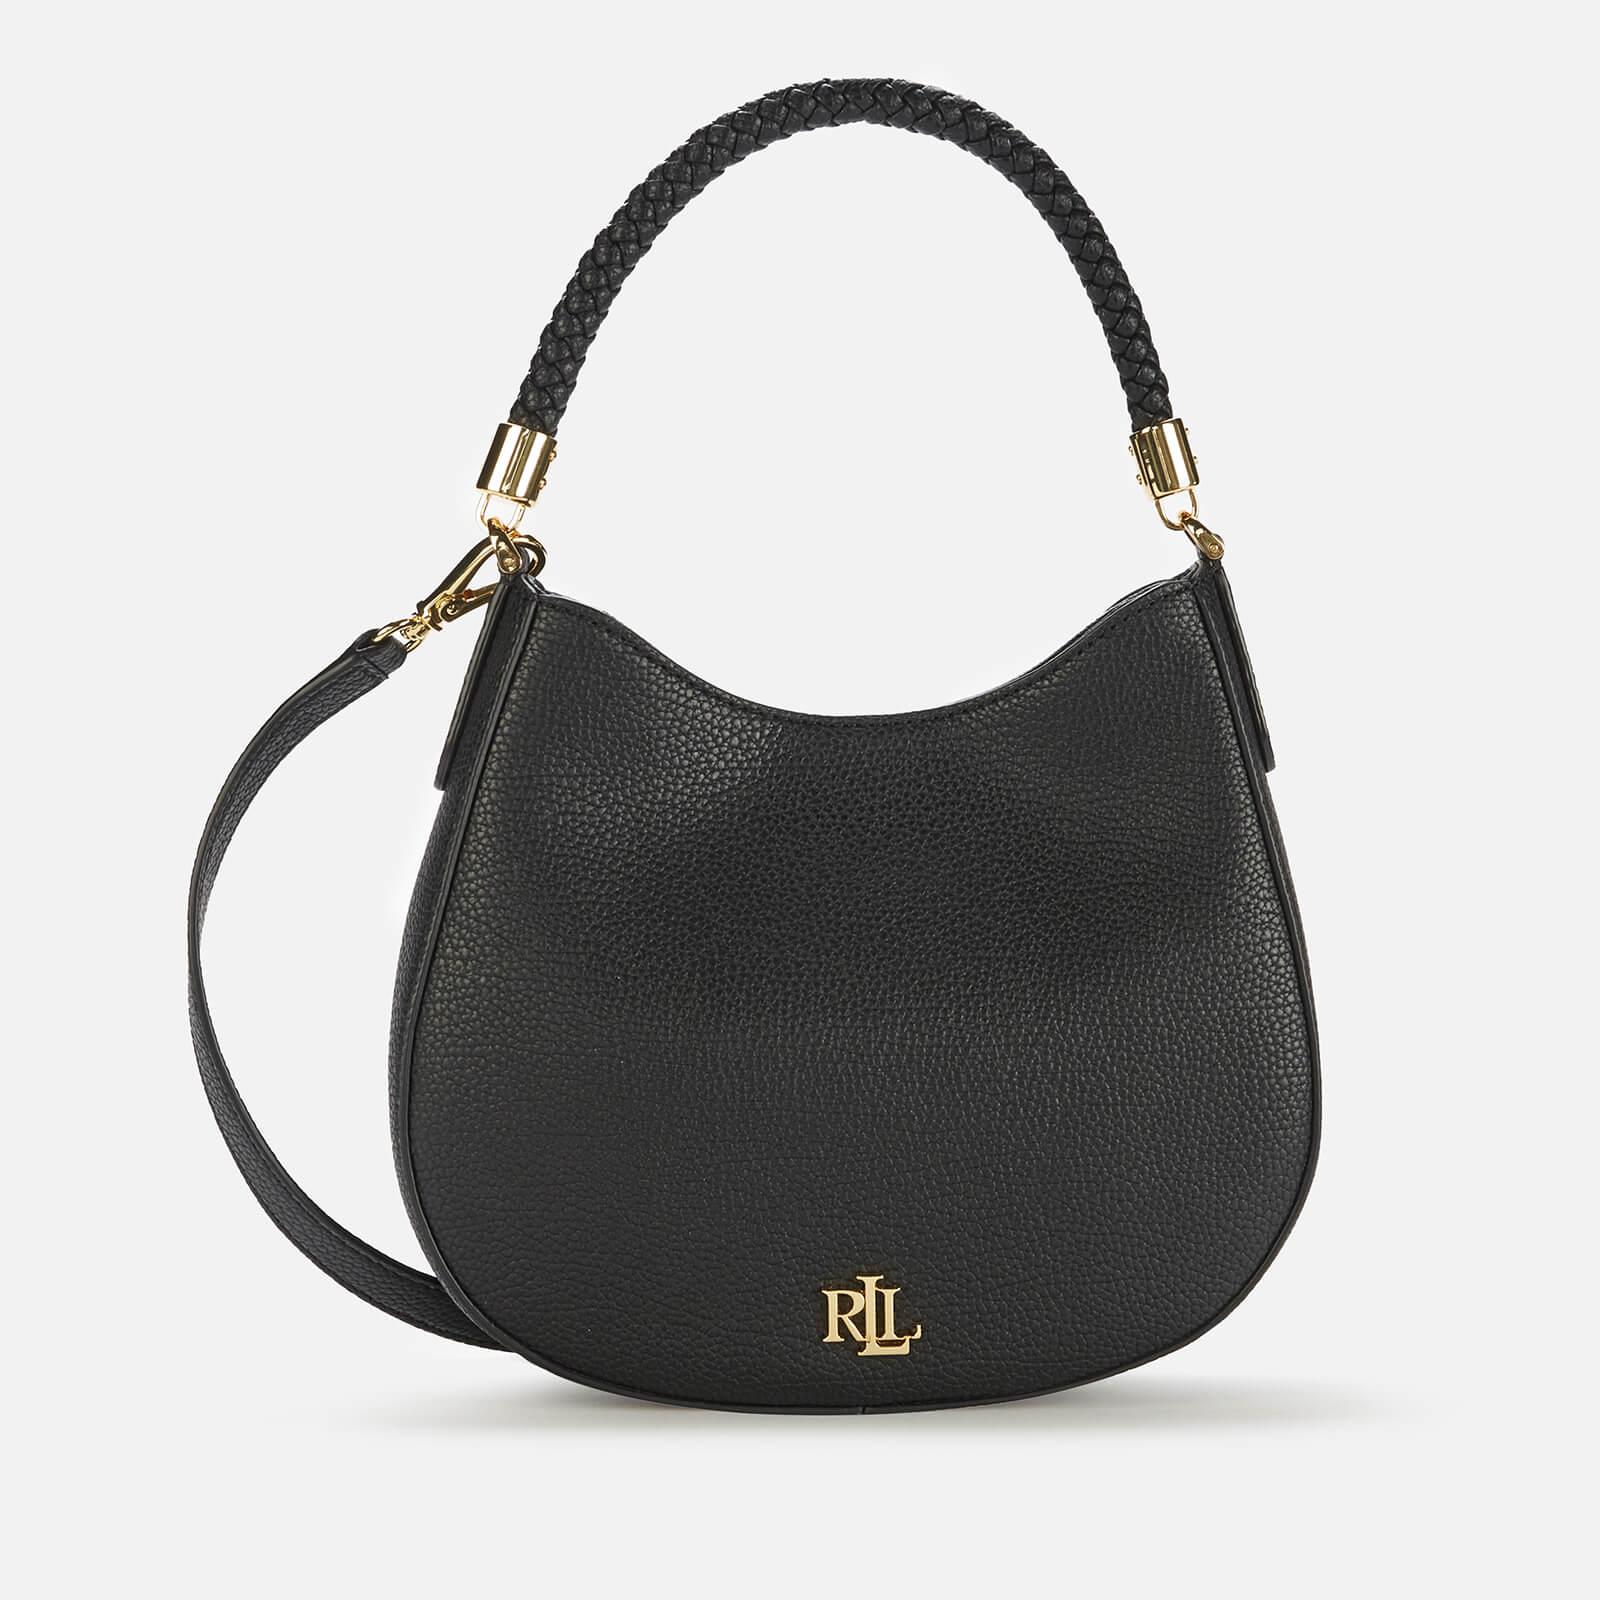 ralph lauren handbags new